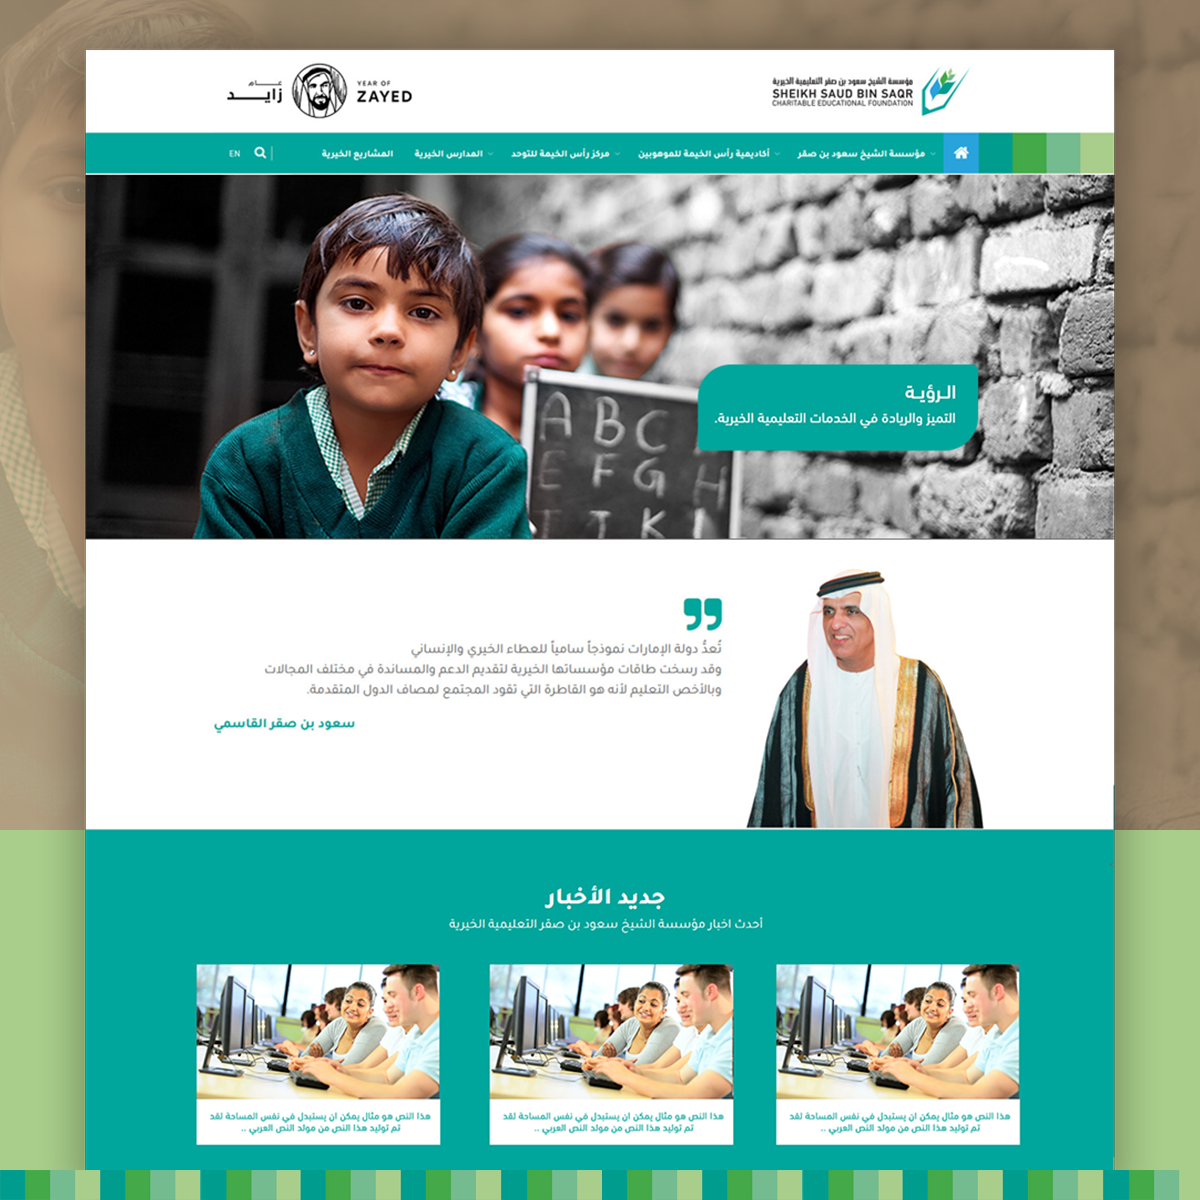 مؤسسة الشيخ سعود بن صقر التعليمية الخيرية